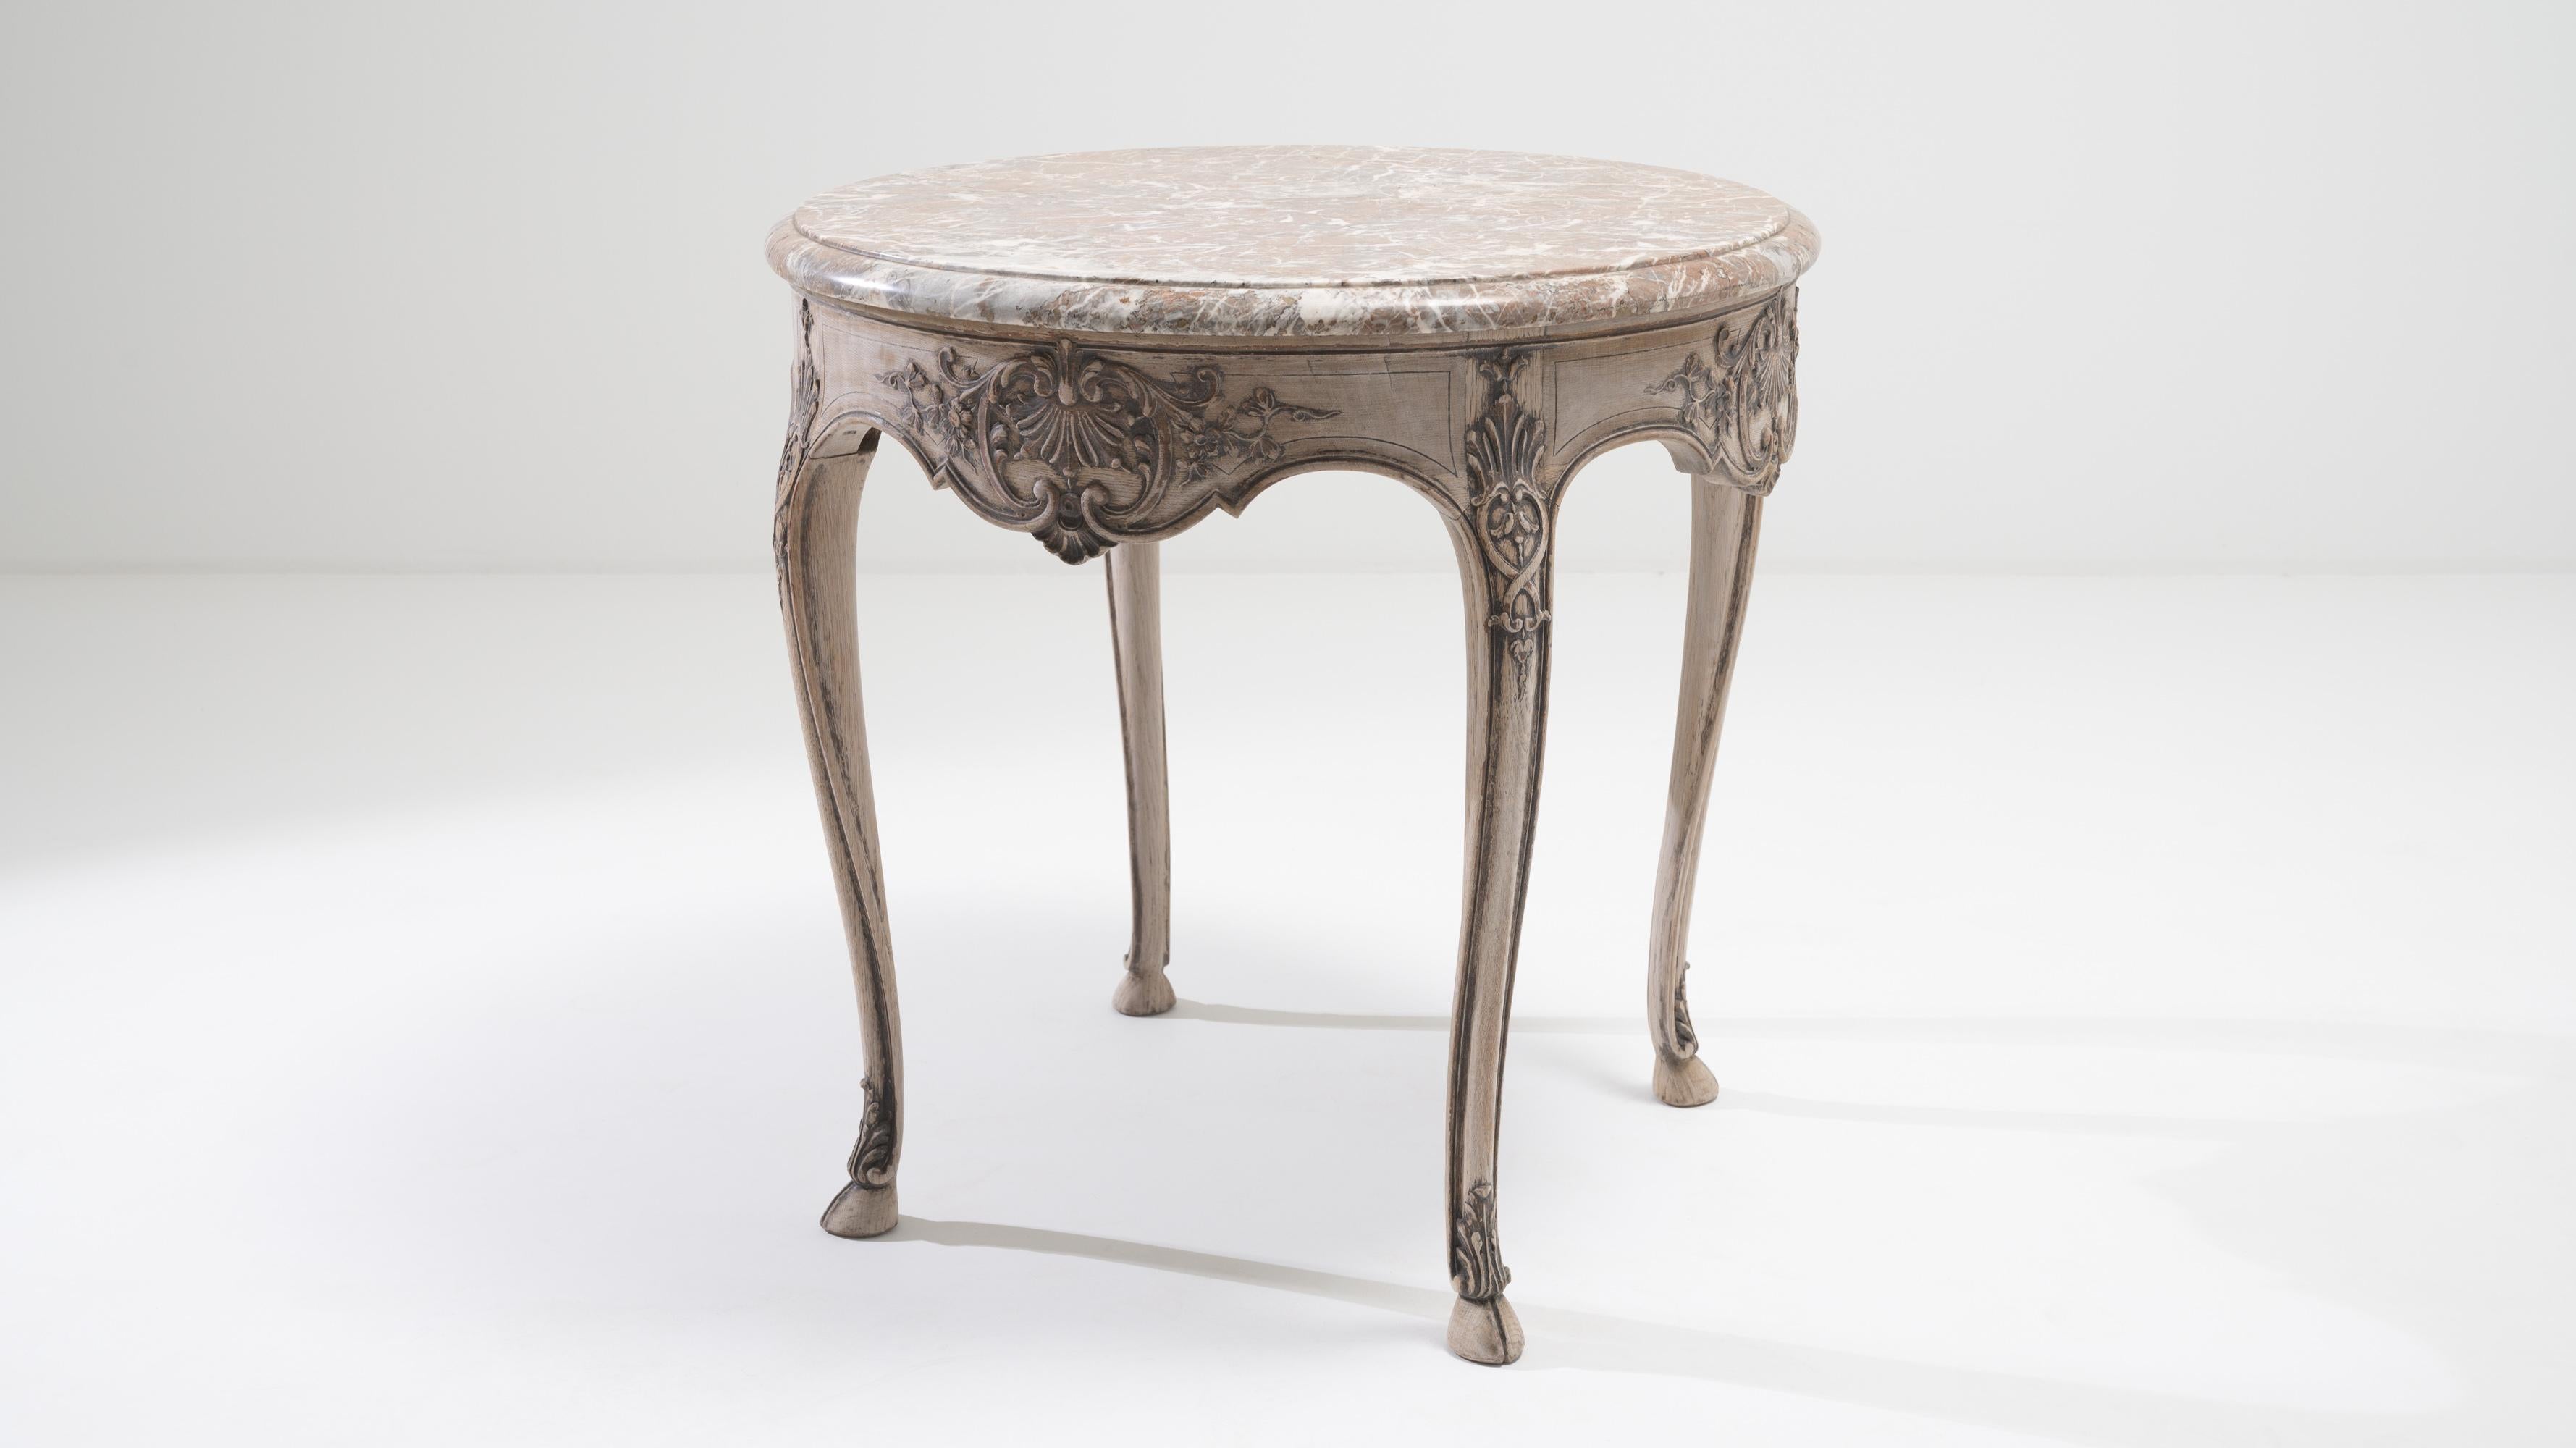 Lassen Sie sich vom Charme des frühen 20. Jahrhunderts verzaubern mit einem Beistelltisch aus gebleichter belgischer Eiche aus der Zeit um 1900, der einen exquisiten Louis XV-Stil aufweist. Dieser charmante Tisch hat eine runde Marmorplatte, die ihm